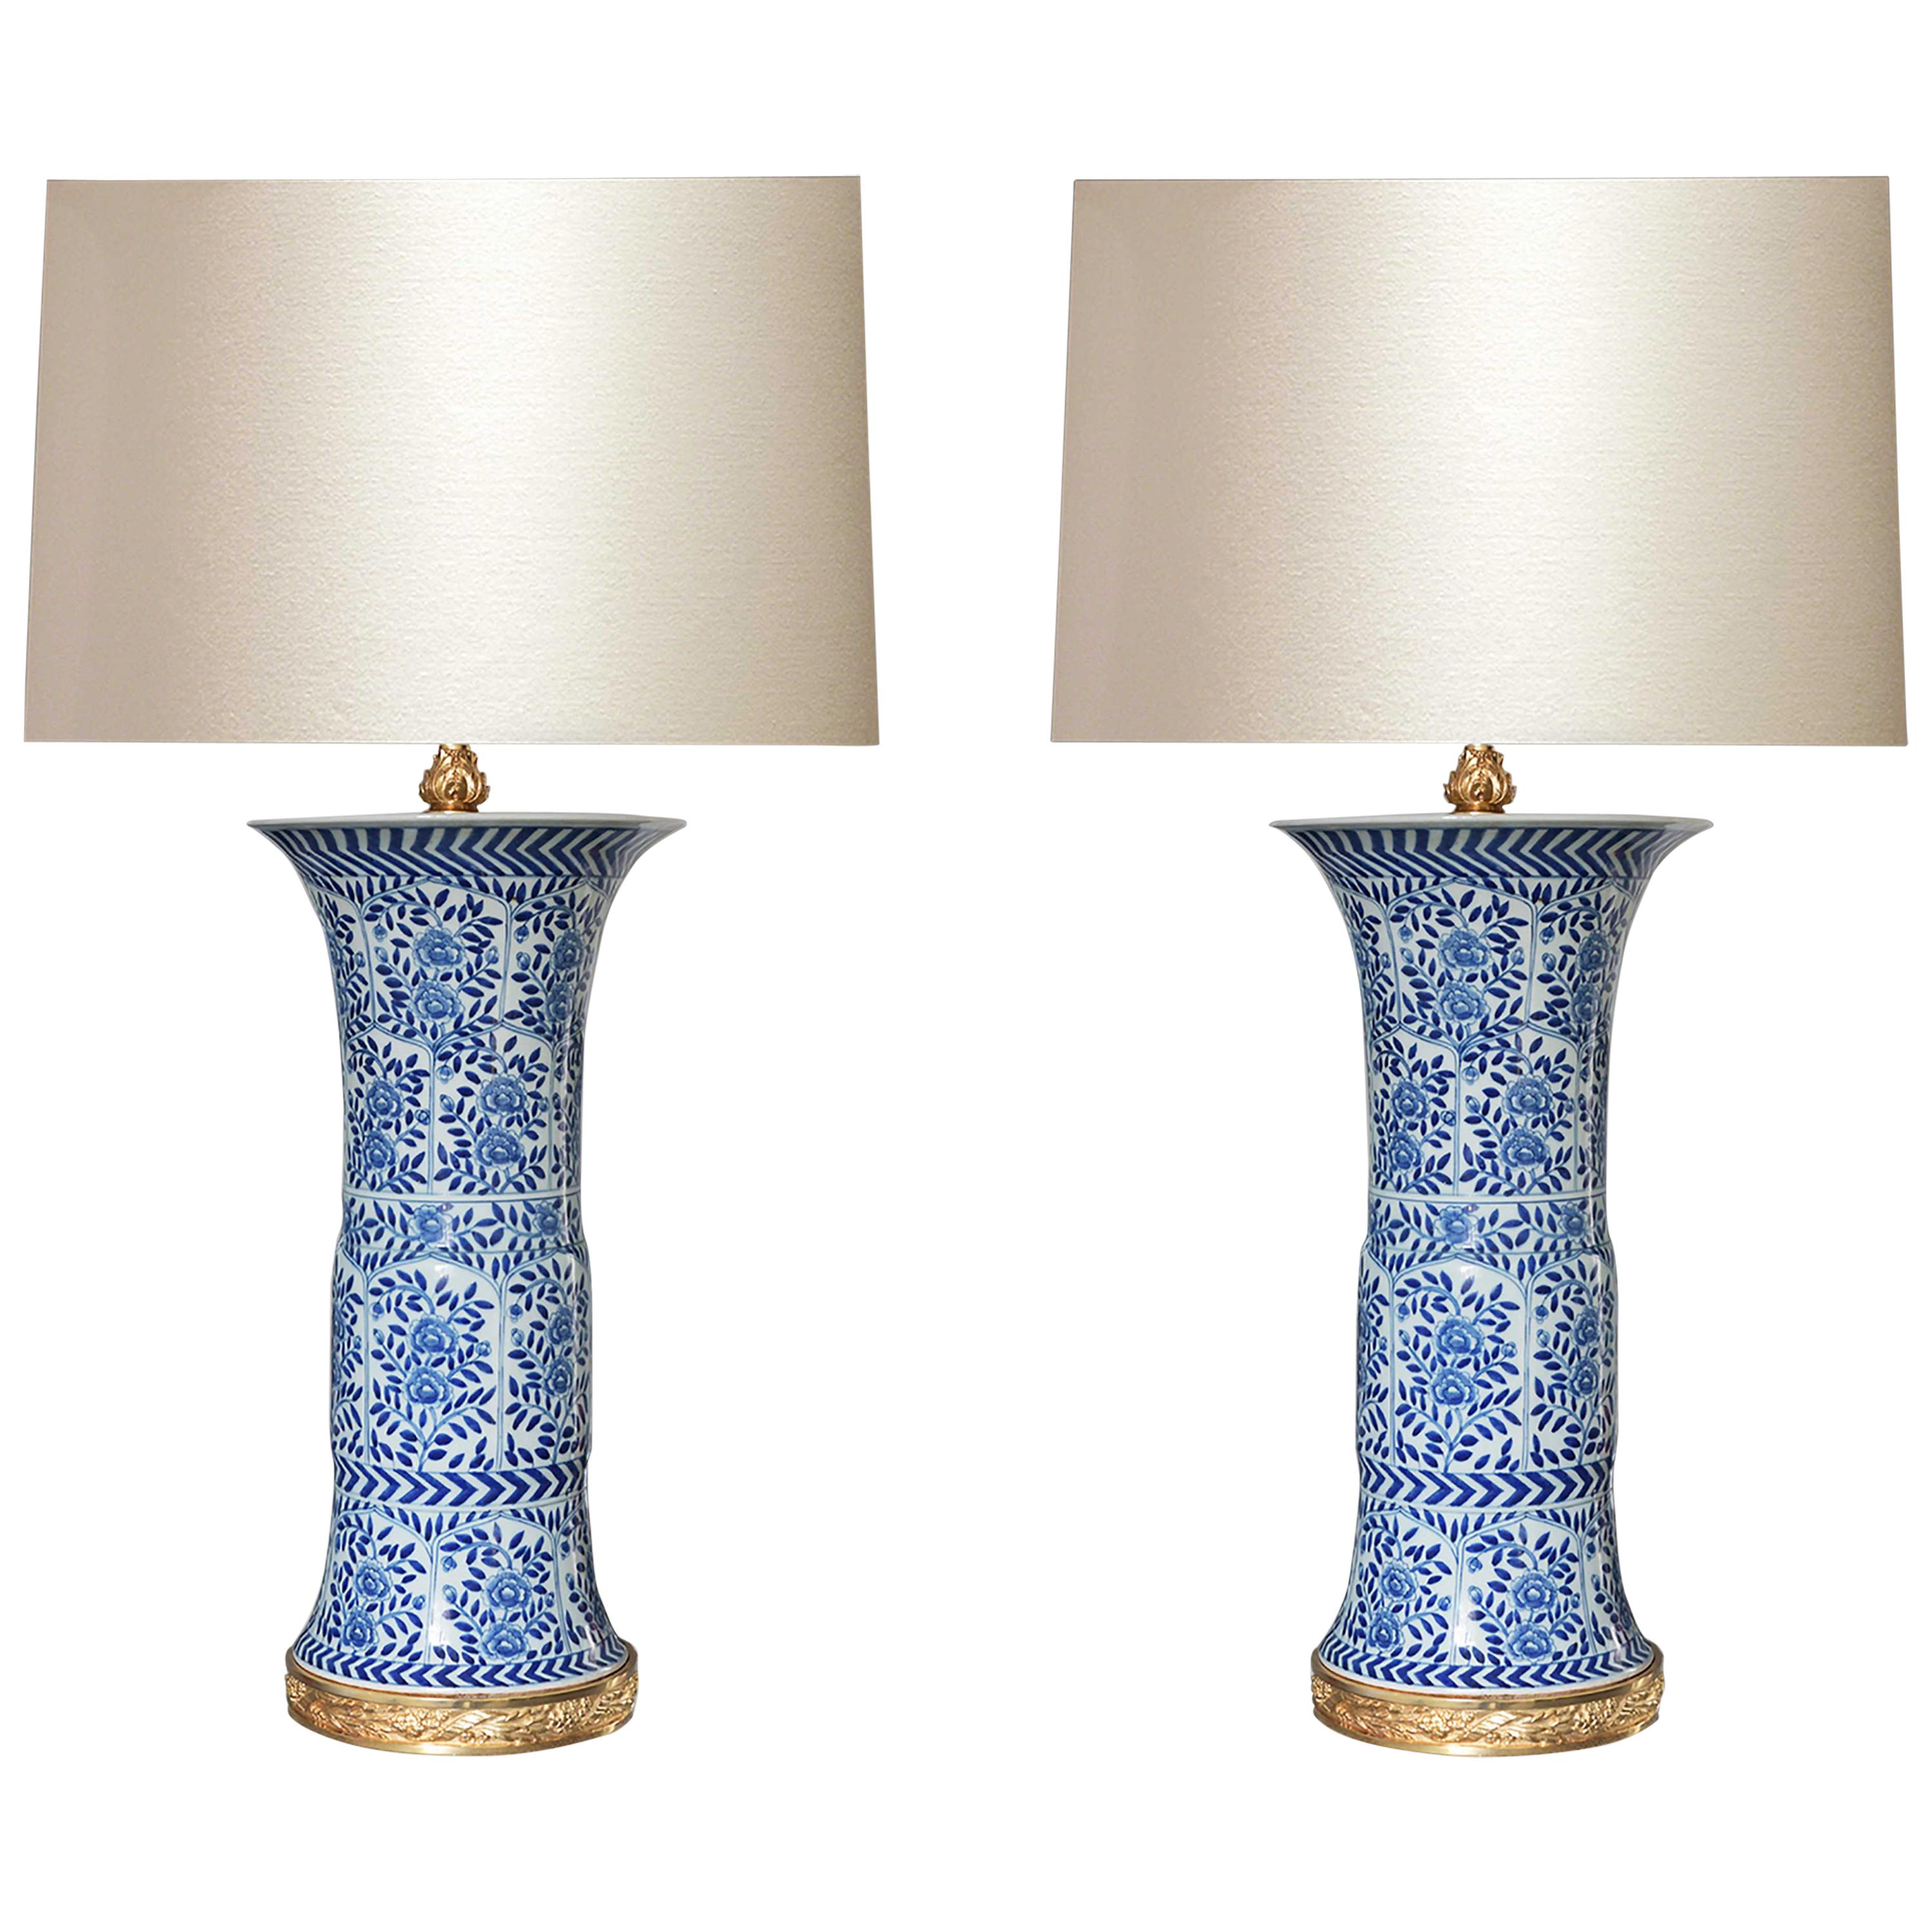 Paar blaue und weiße Porzellanlampen